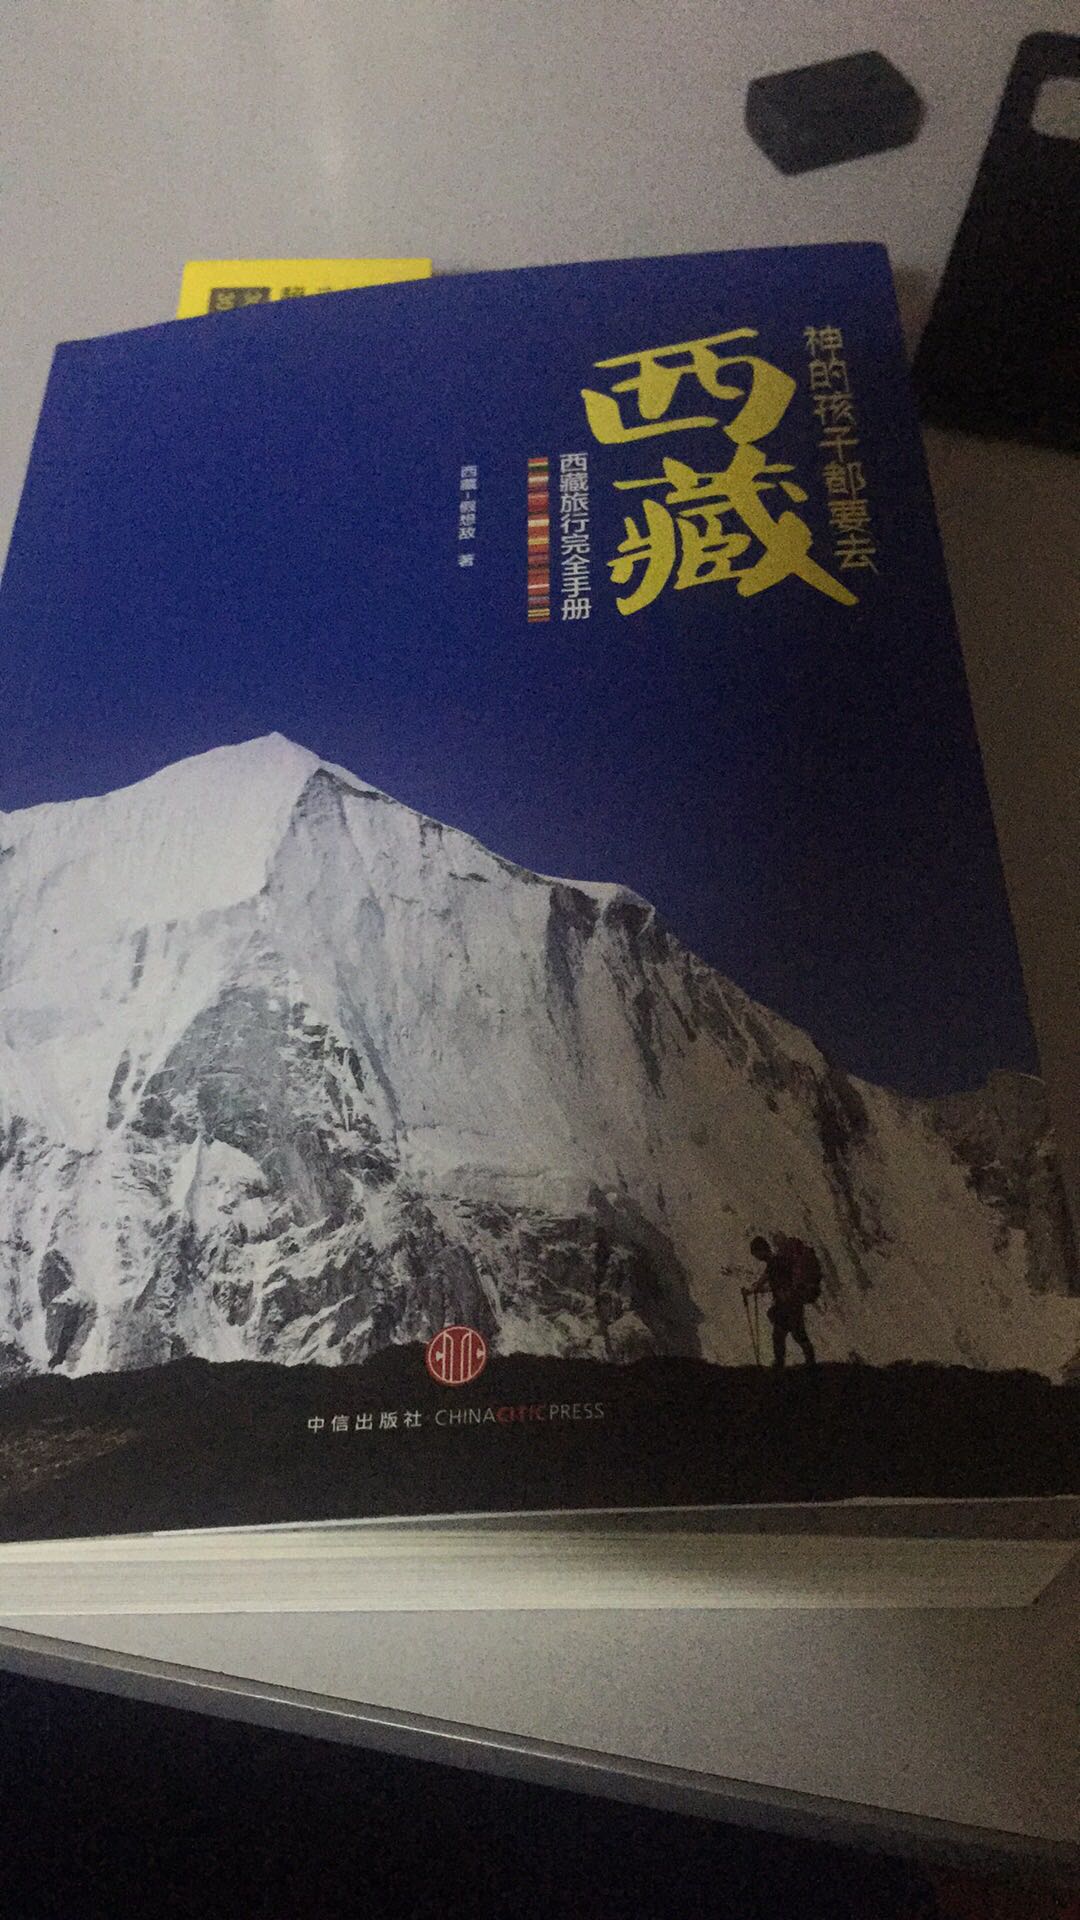 很早之前就知道这本书，希望有机会自驾去一趟西藏